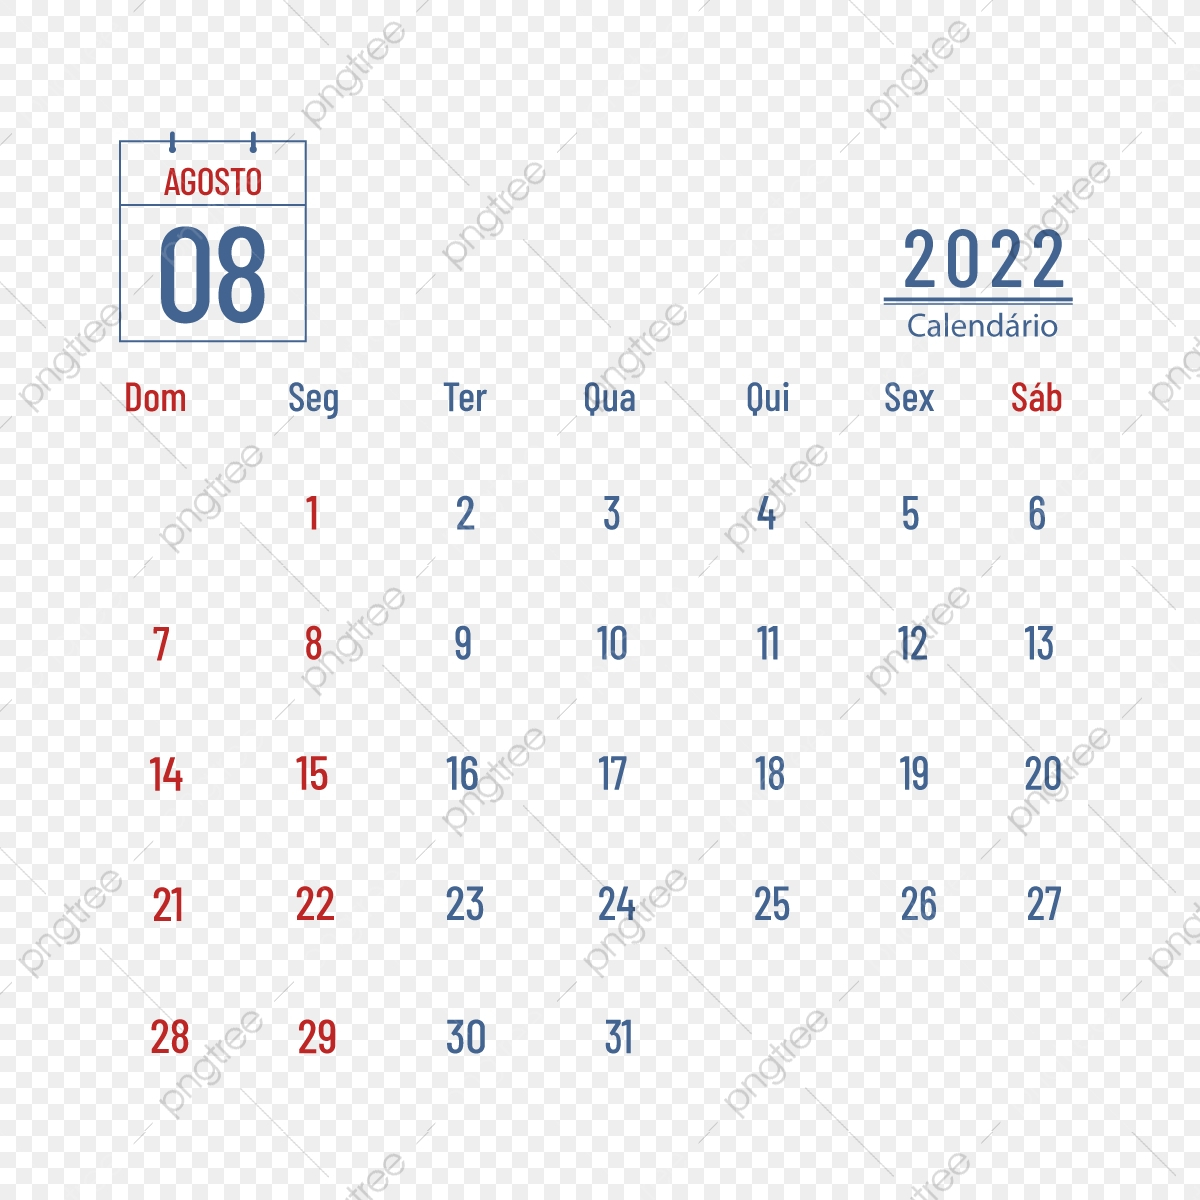 August 2022 Calendar Dates, Week, 2022, Calendar Png And